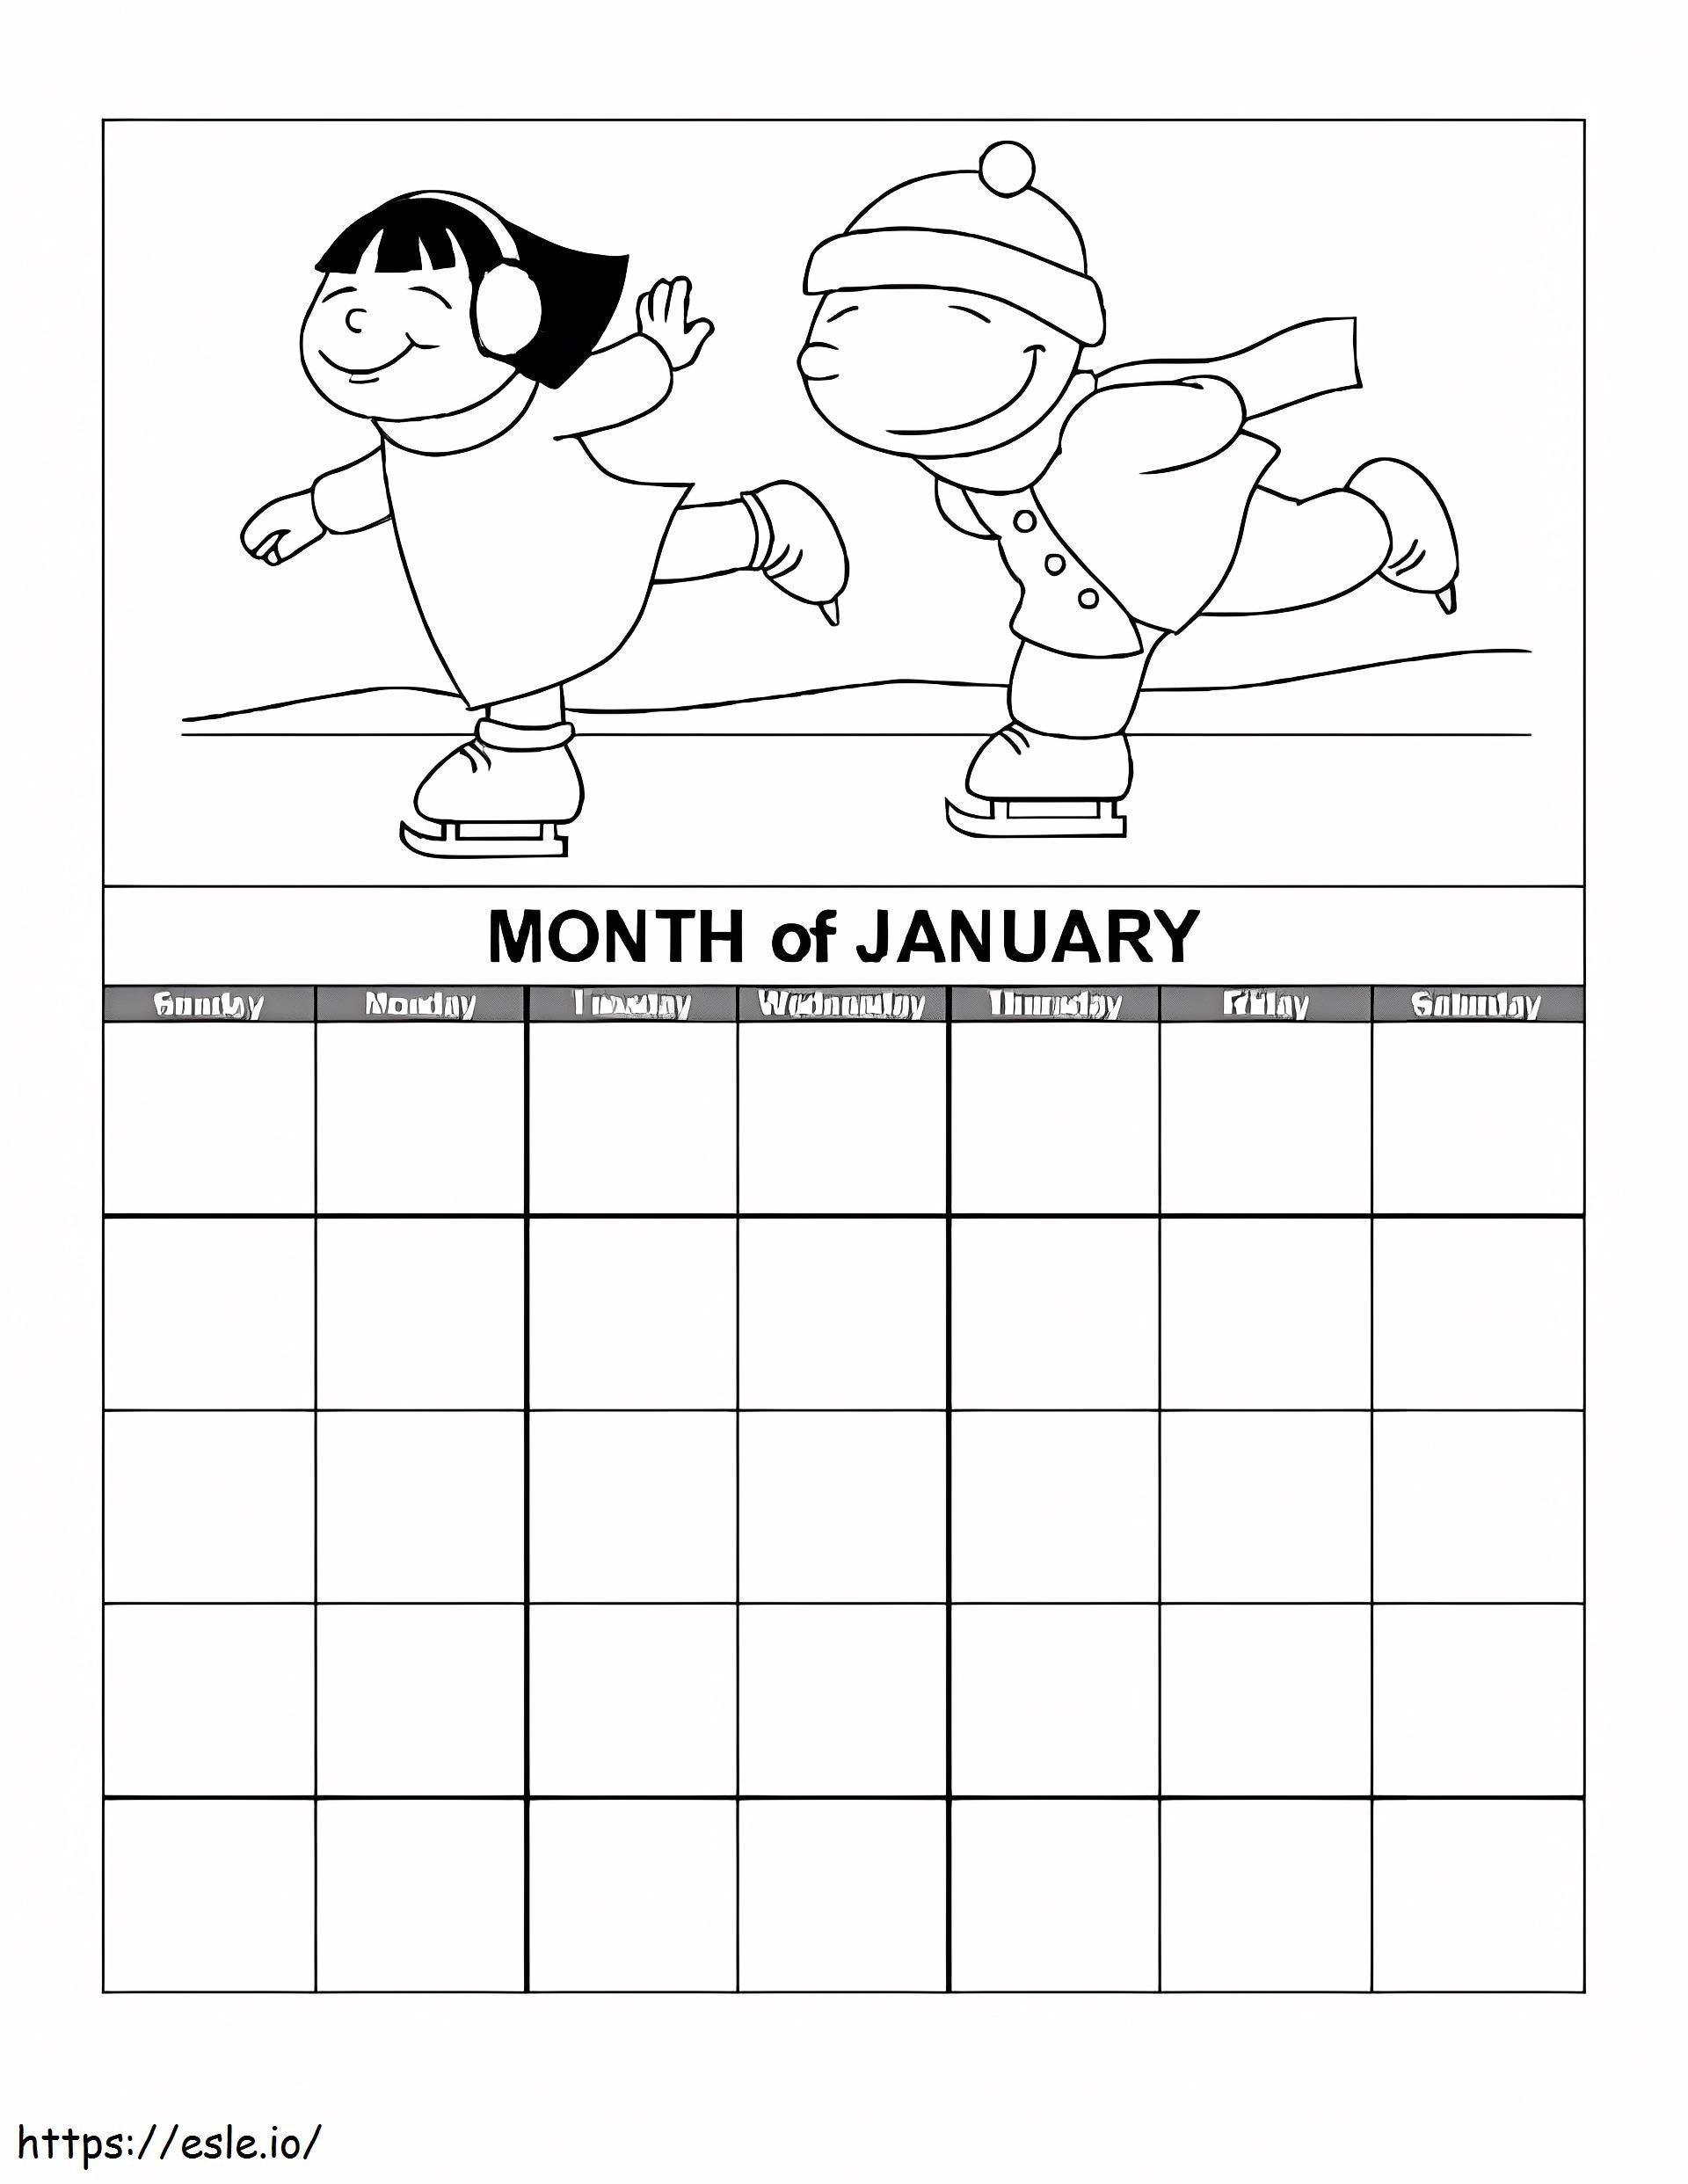 Kalendarz miesiąca stycznia kolorowanka